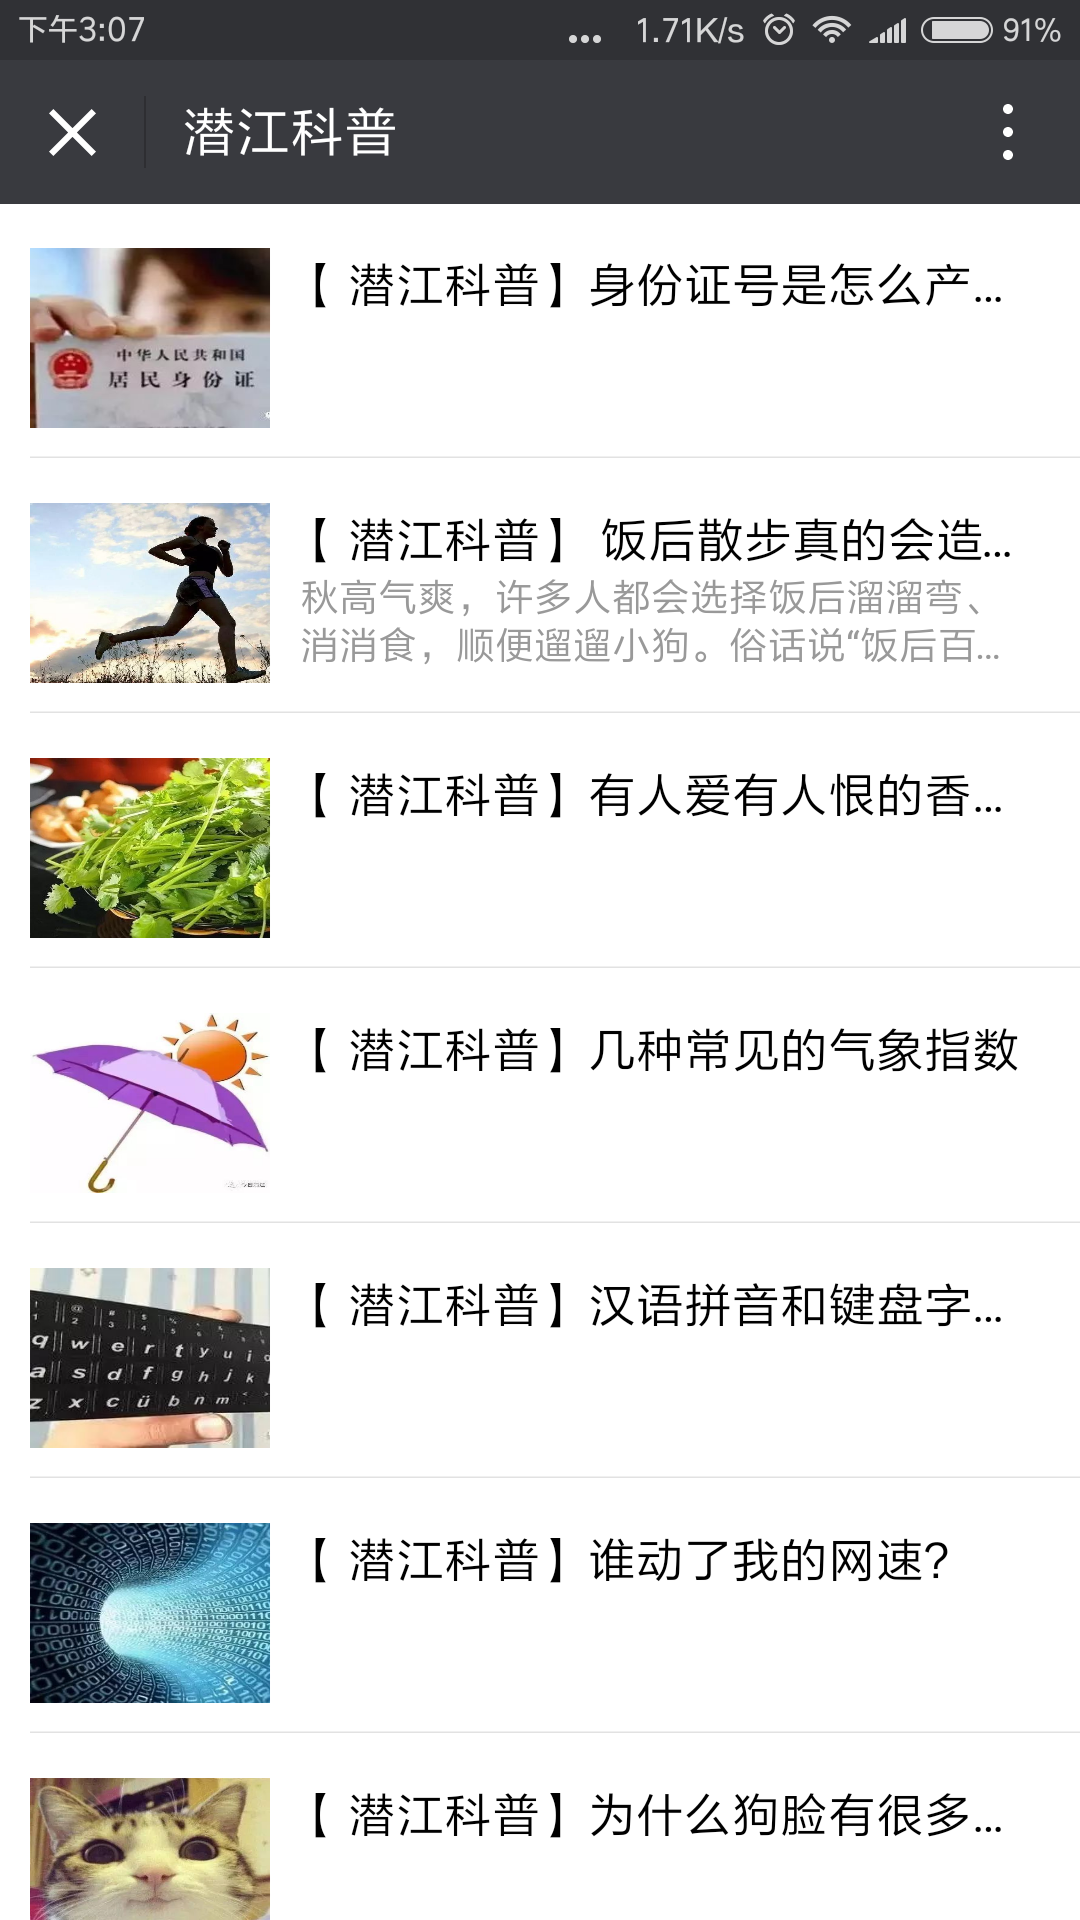 桌面Screenshot_2017-11-16-15-07-28-392_com.tencent.mm.png